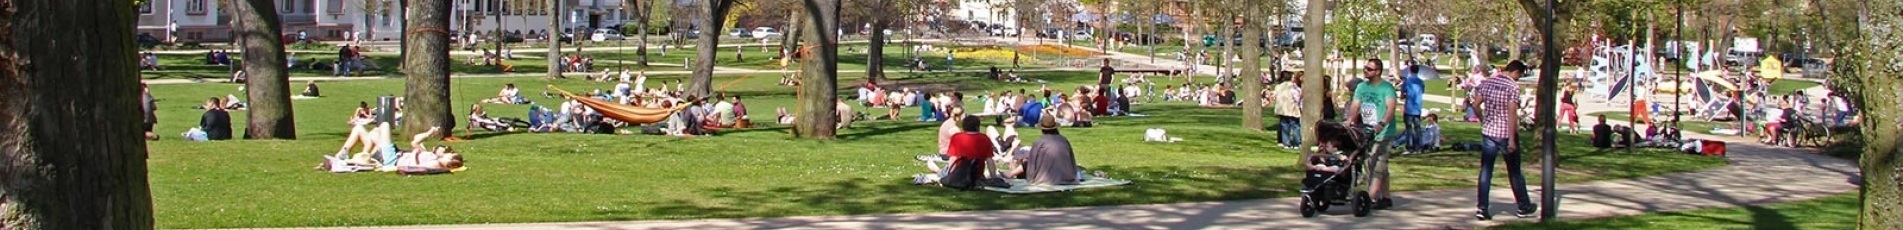 Viele Lautrer und Touristen sonnen sich auf den Wiesen des Stadtparks. Ob bei einem guten Buch, Musik oder auf dem Spielplatz, hier ist das volle Leben.